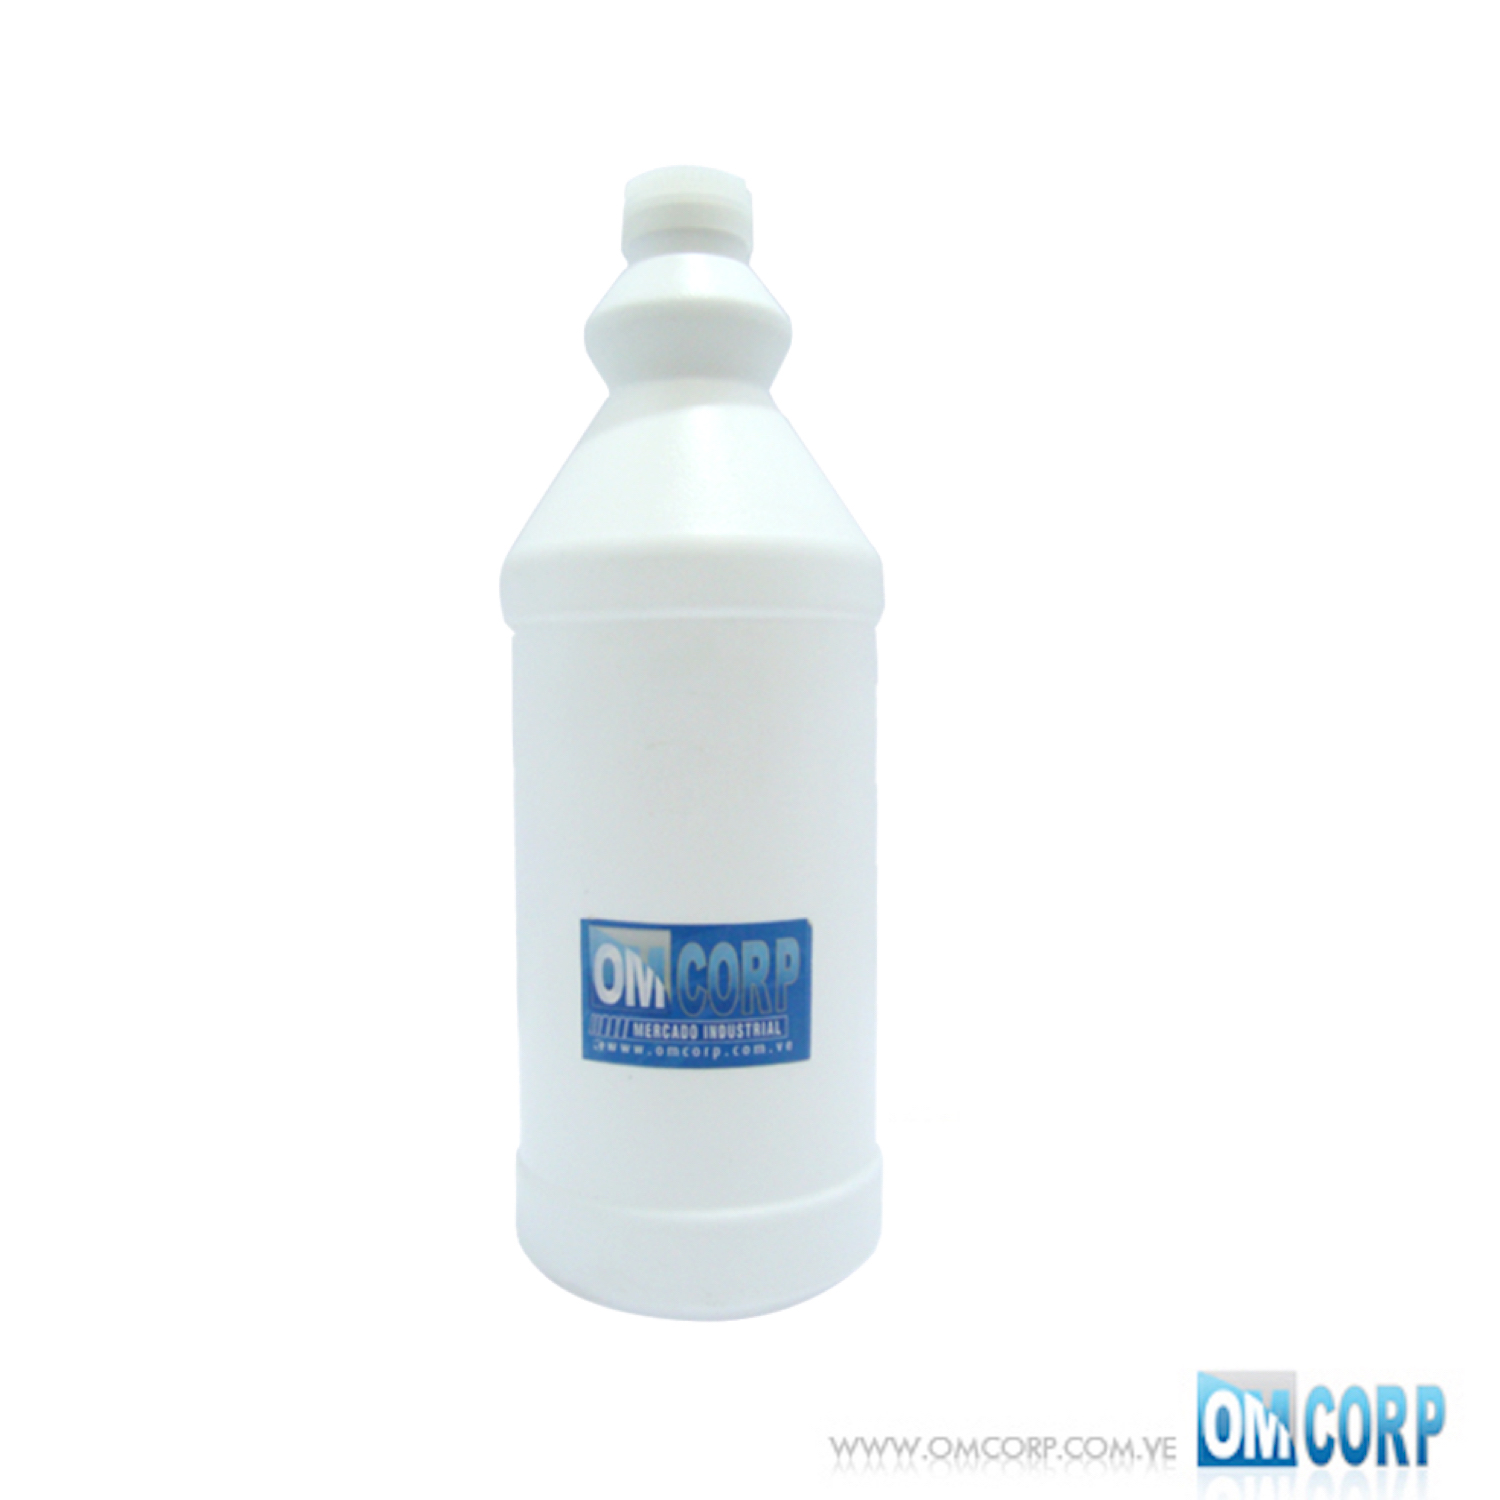 https://omcorp.com.ve/wp-content/uploads/2020/04/Envase-Plastico-1-Litro-Blanco-Tipo-Botella-Con-Tapa-Presion-MIA10163P.jpeg